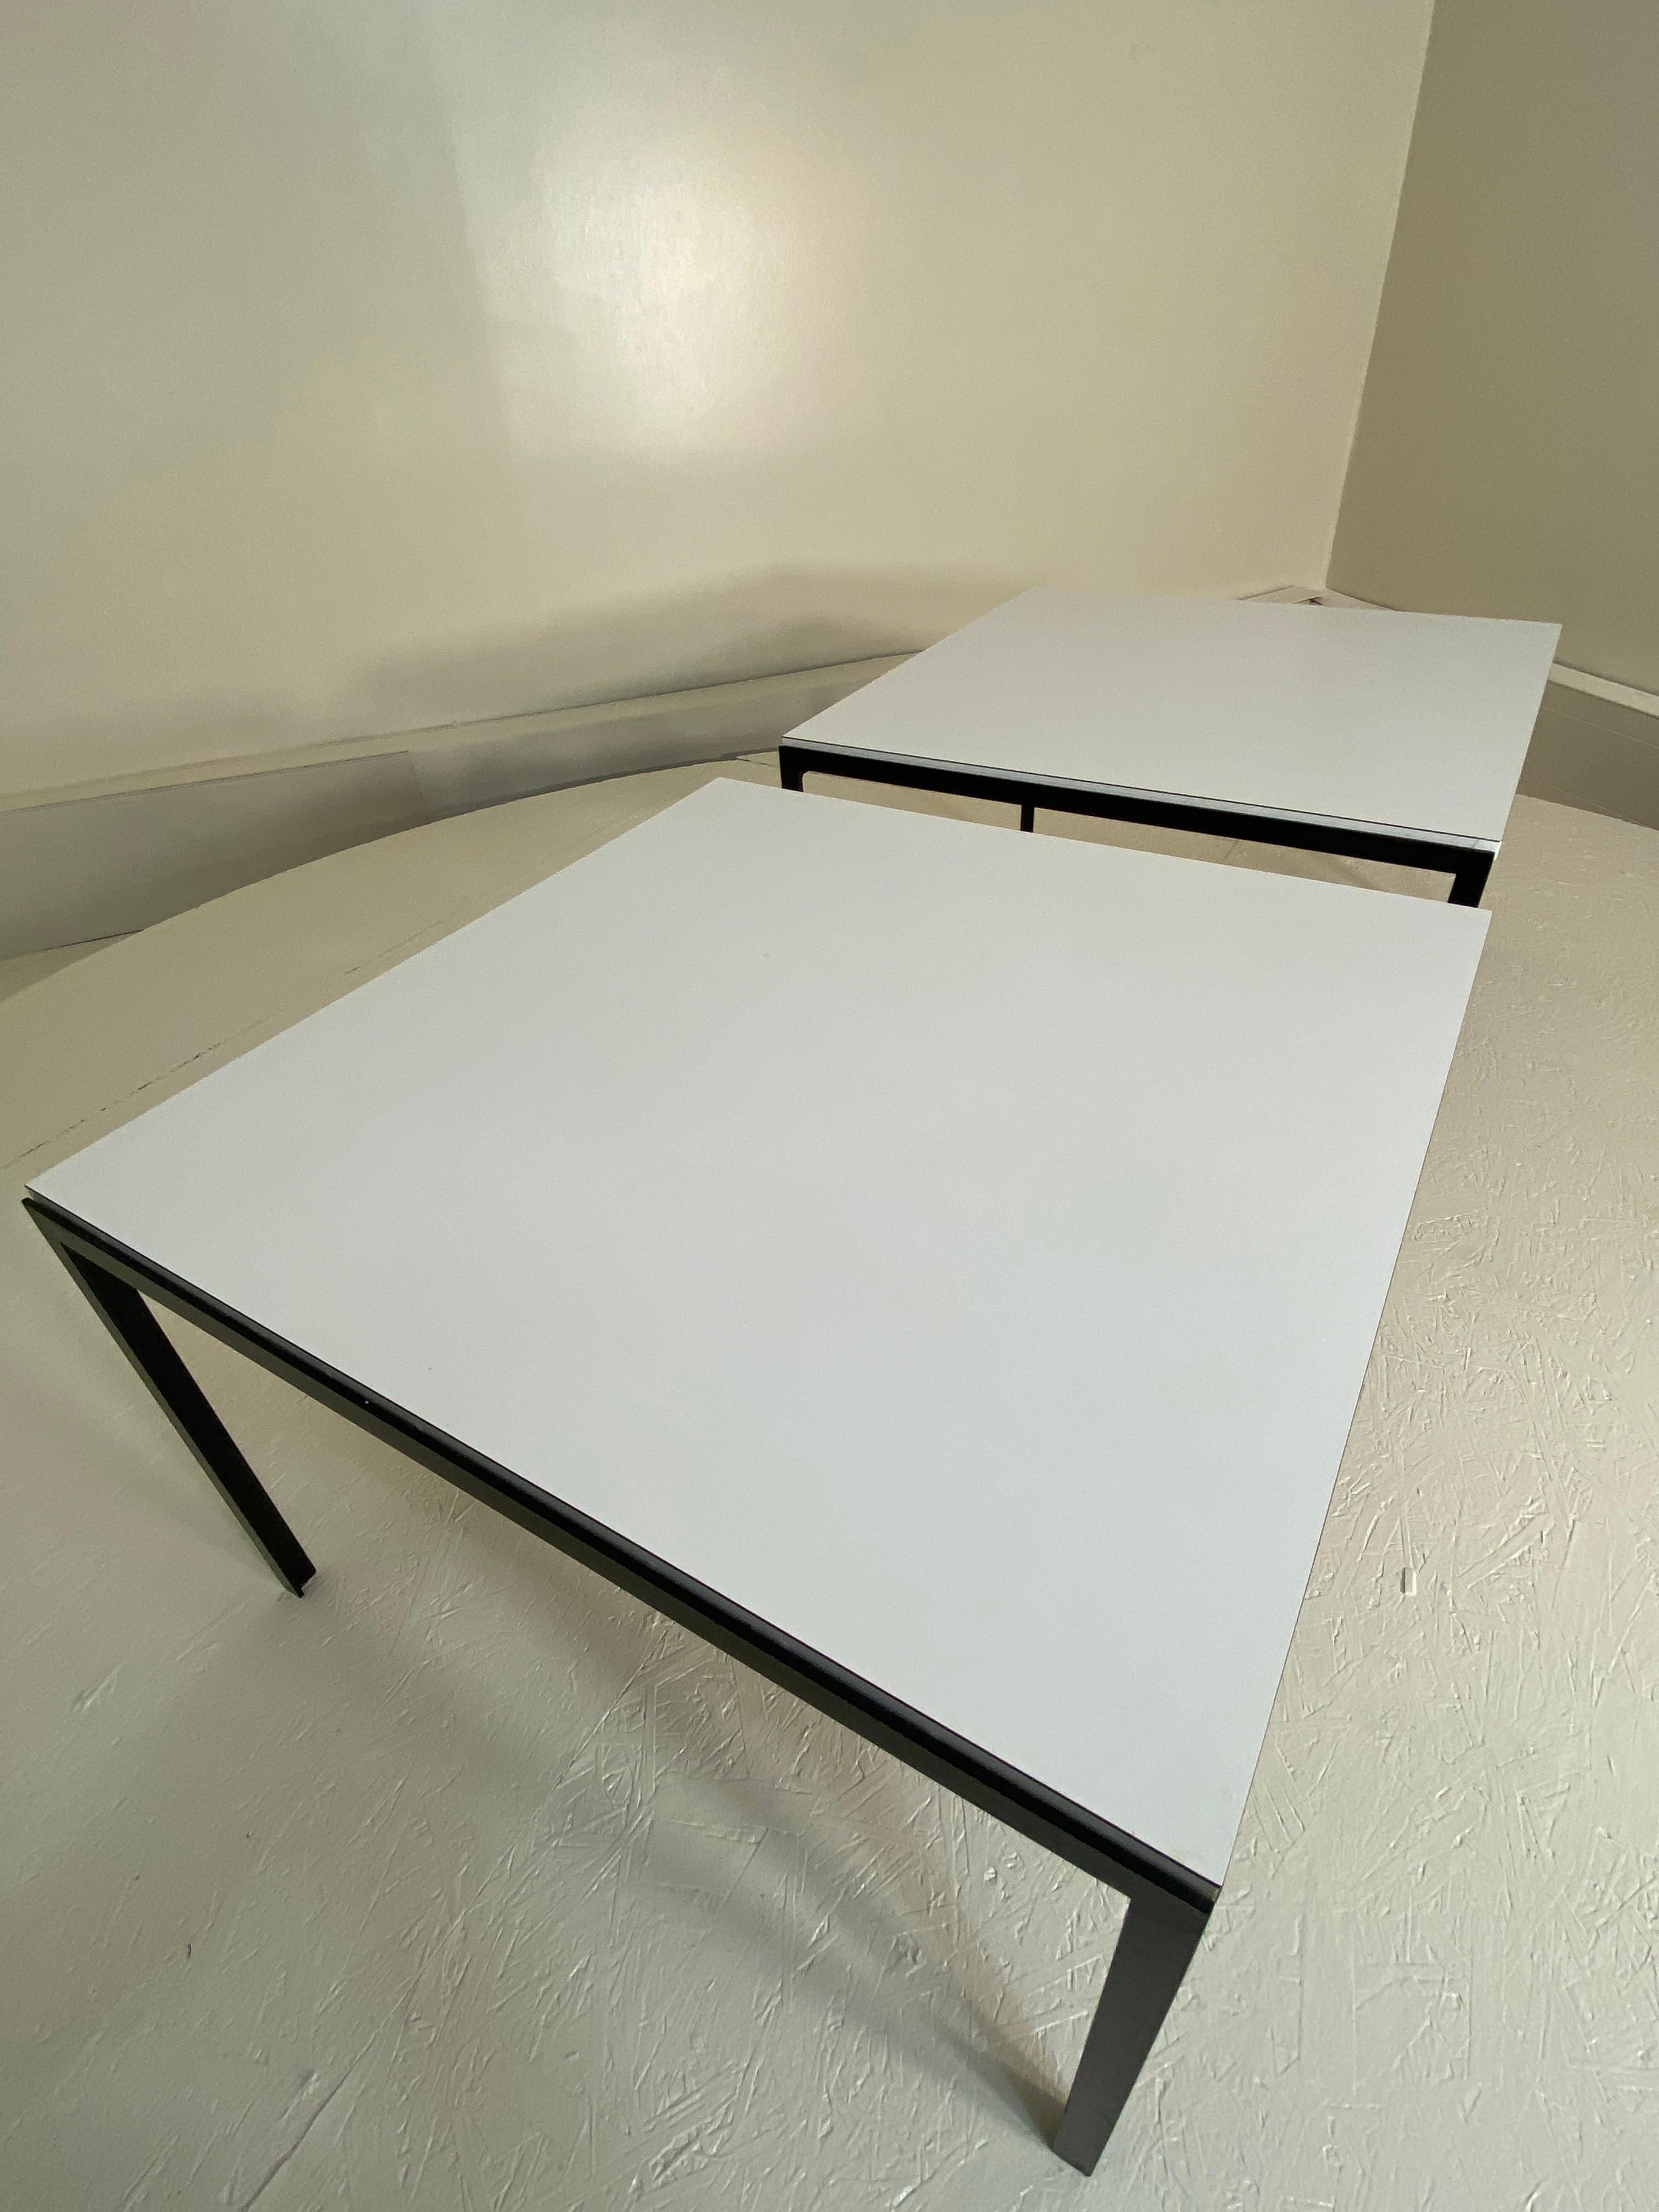 Sehr groß. Dieses aus den 1960er Jahren hergestellte Set großer Tische mit den Maßen 76,2 x 76,2 x 48,2 cm (30 x 30 x 19 zoll) ist speziell für die Verwendung mit Stühlen oder Sofas als Beistell- oder Beistelltische konzipiert. Ein gutes,